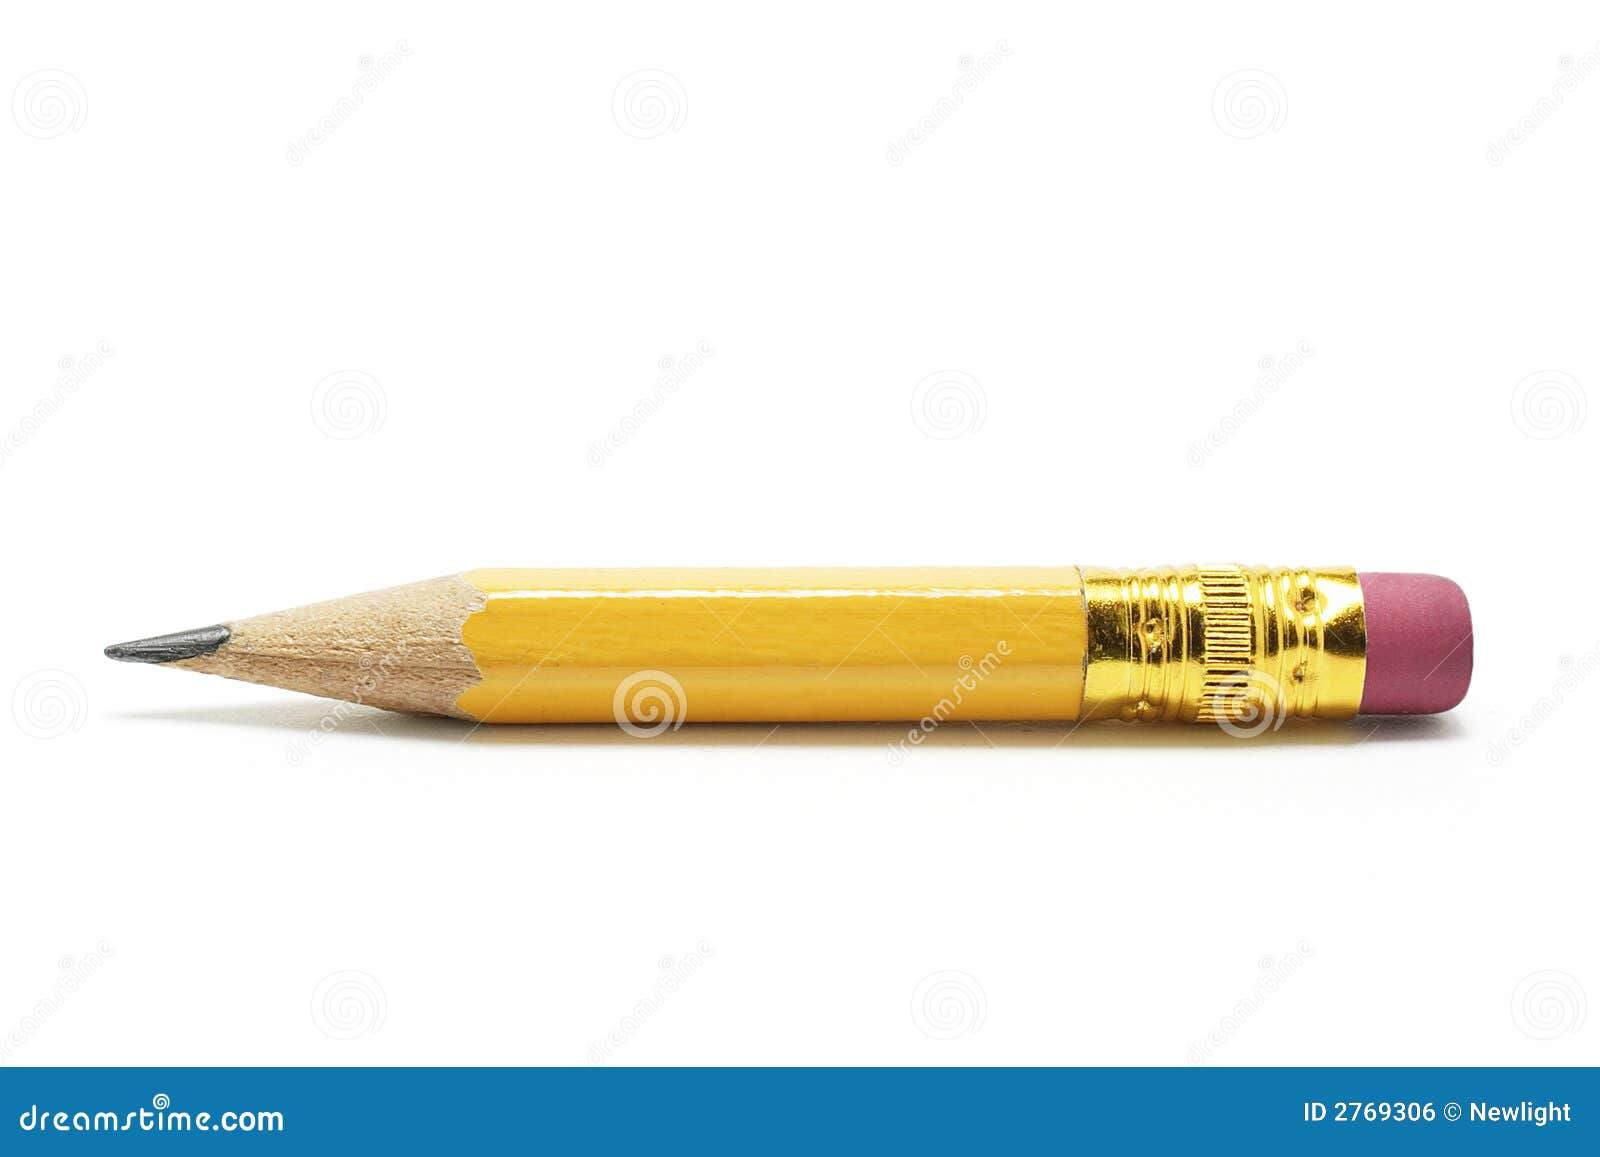 short pencil